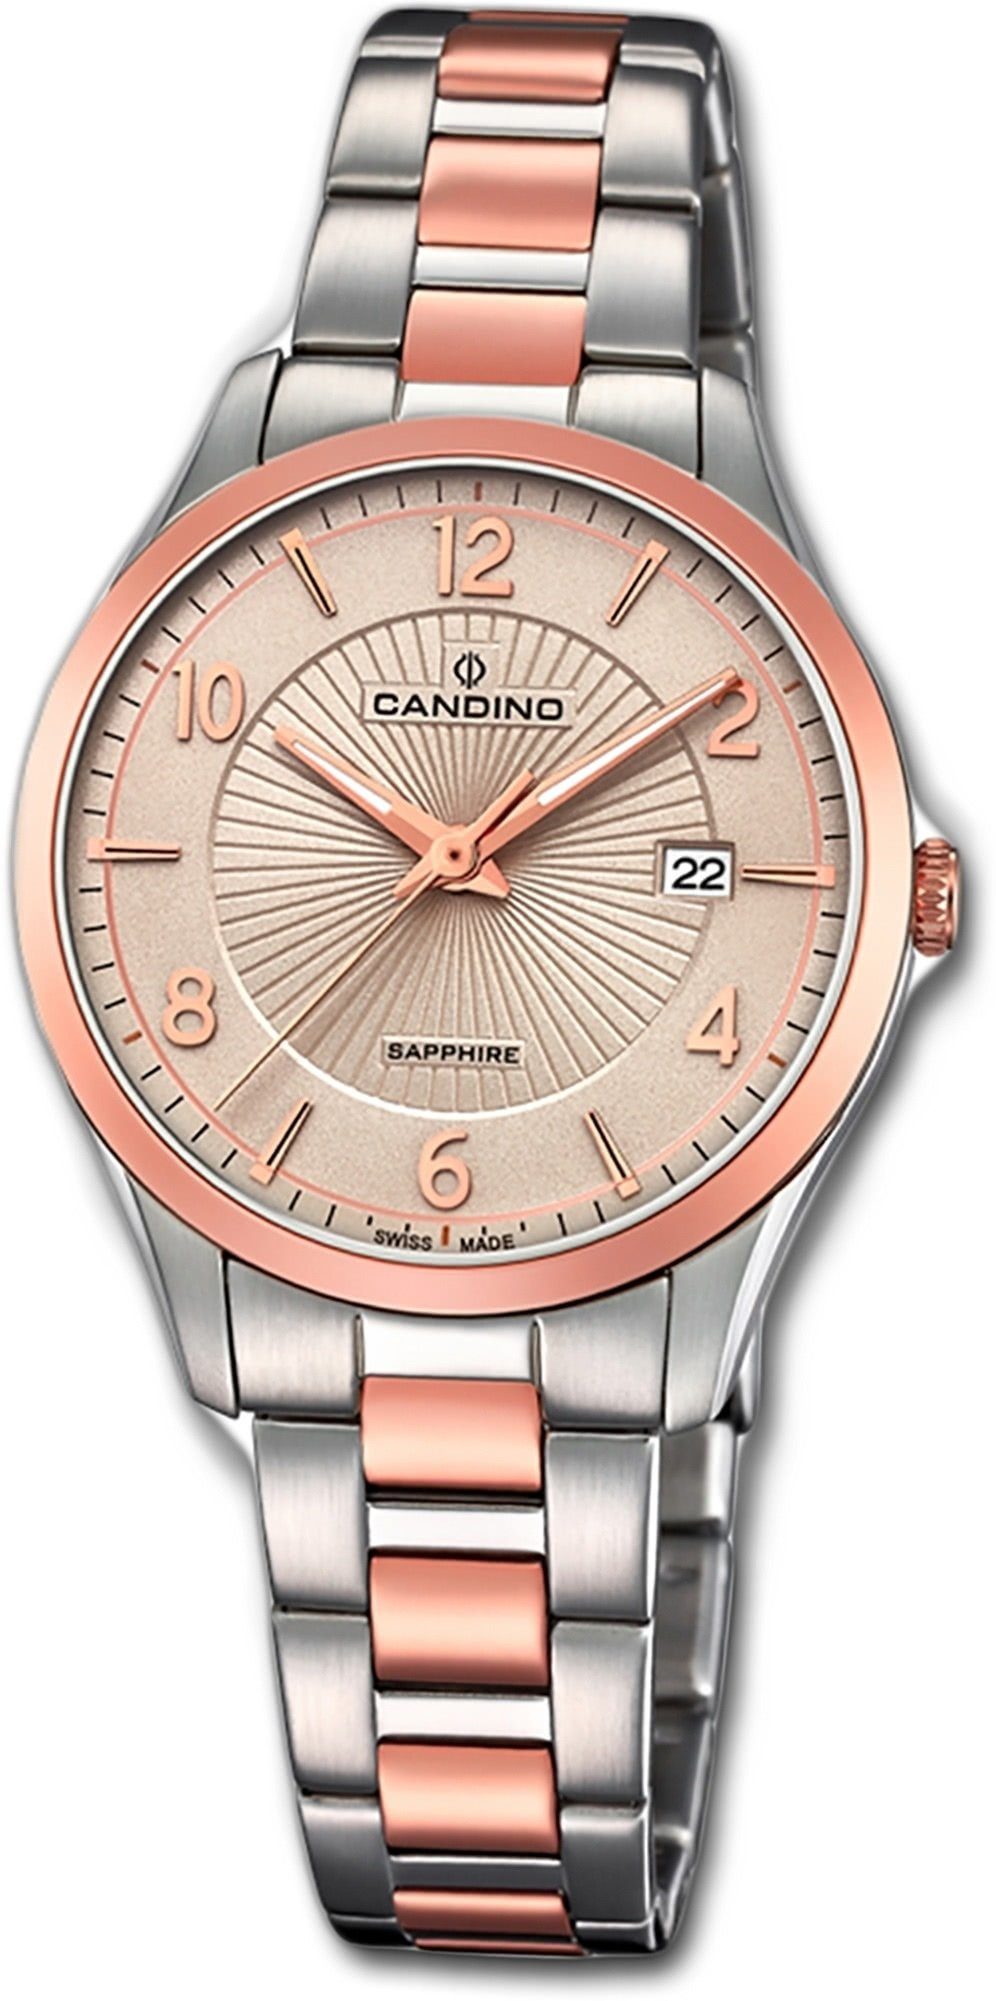 Damen Uhren Candino Quarzuhr D2UC4610/2 Candino Classic Edelstahl Damen Uhr, Damenuhr mit Edelstahlarmband, rundes Gehäuse, mitt